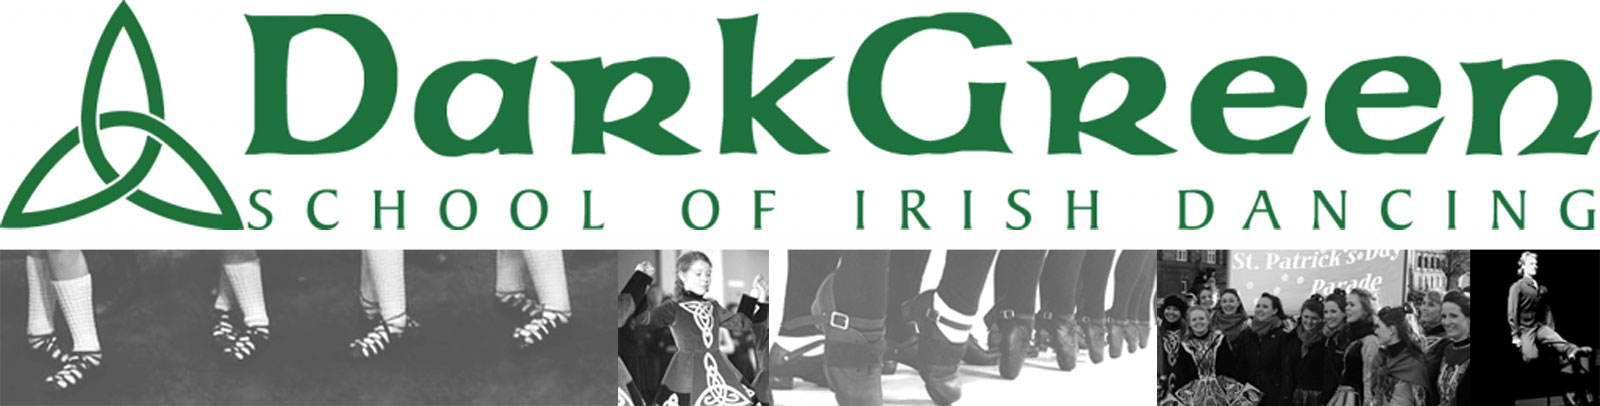 Dark Green School of Irish Dancing